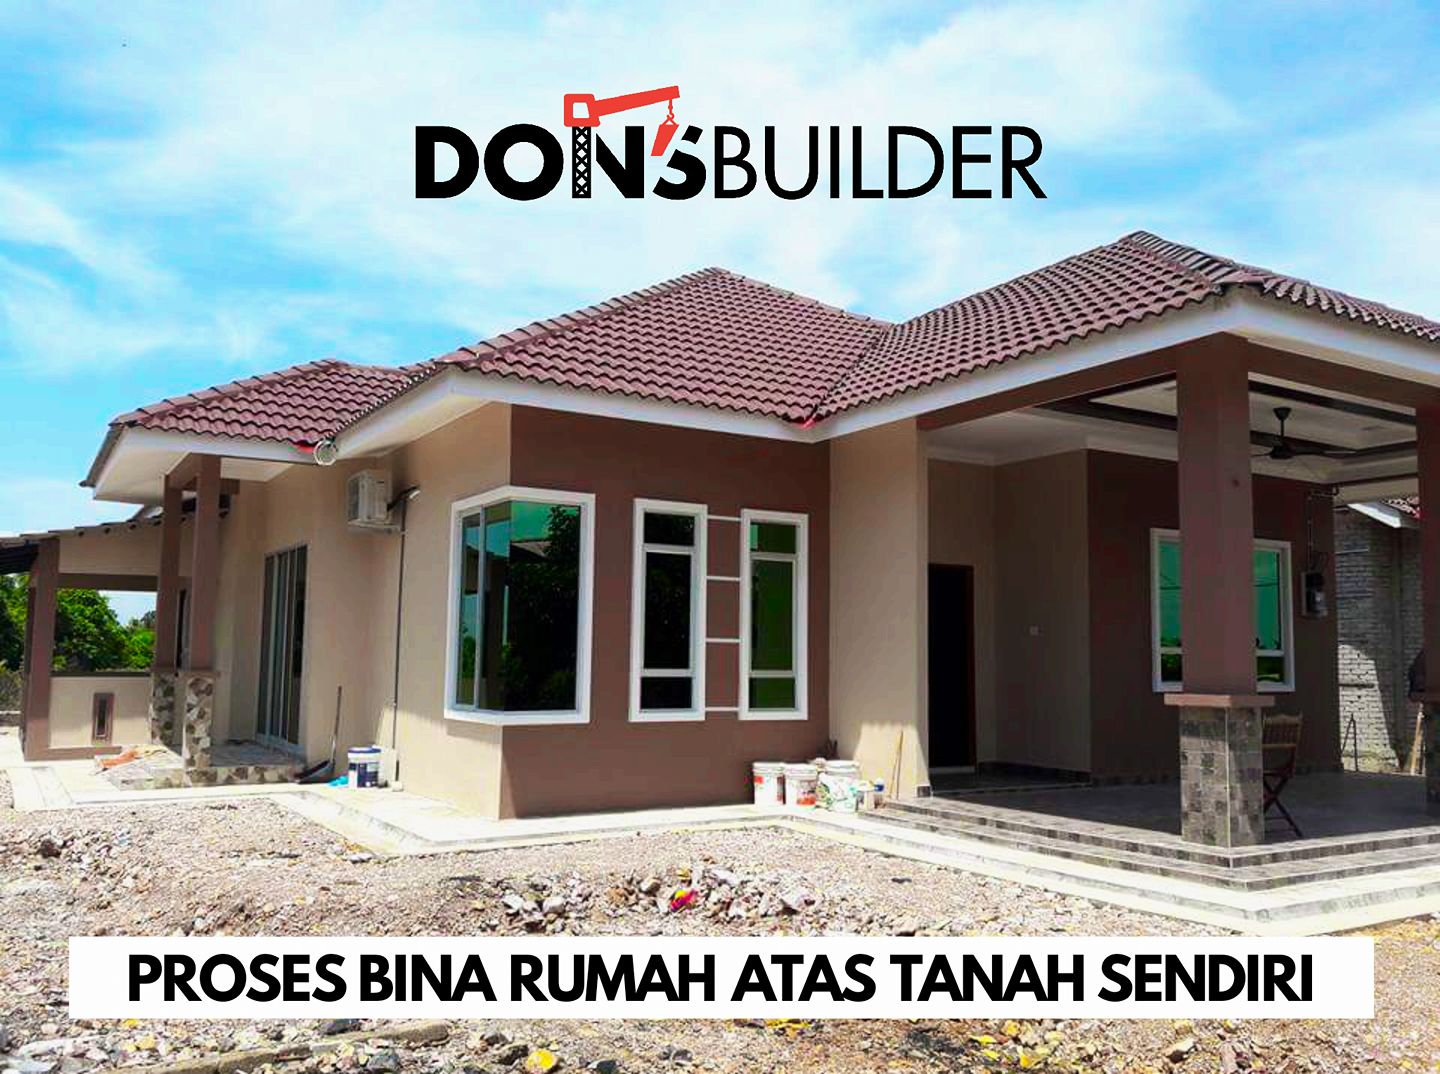 Bina Rumah Atas Tanah Sendiri Di Selangor - onsortz - Bantuan Bina Rumah Atas Tanah Sendiri